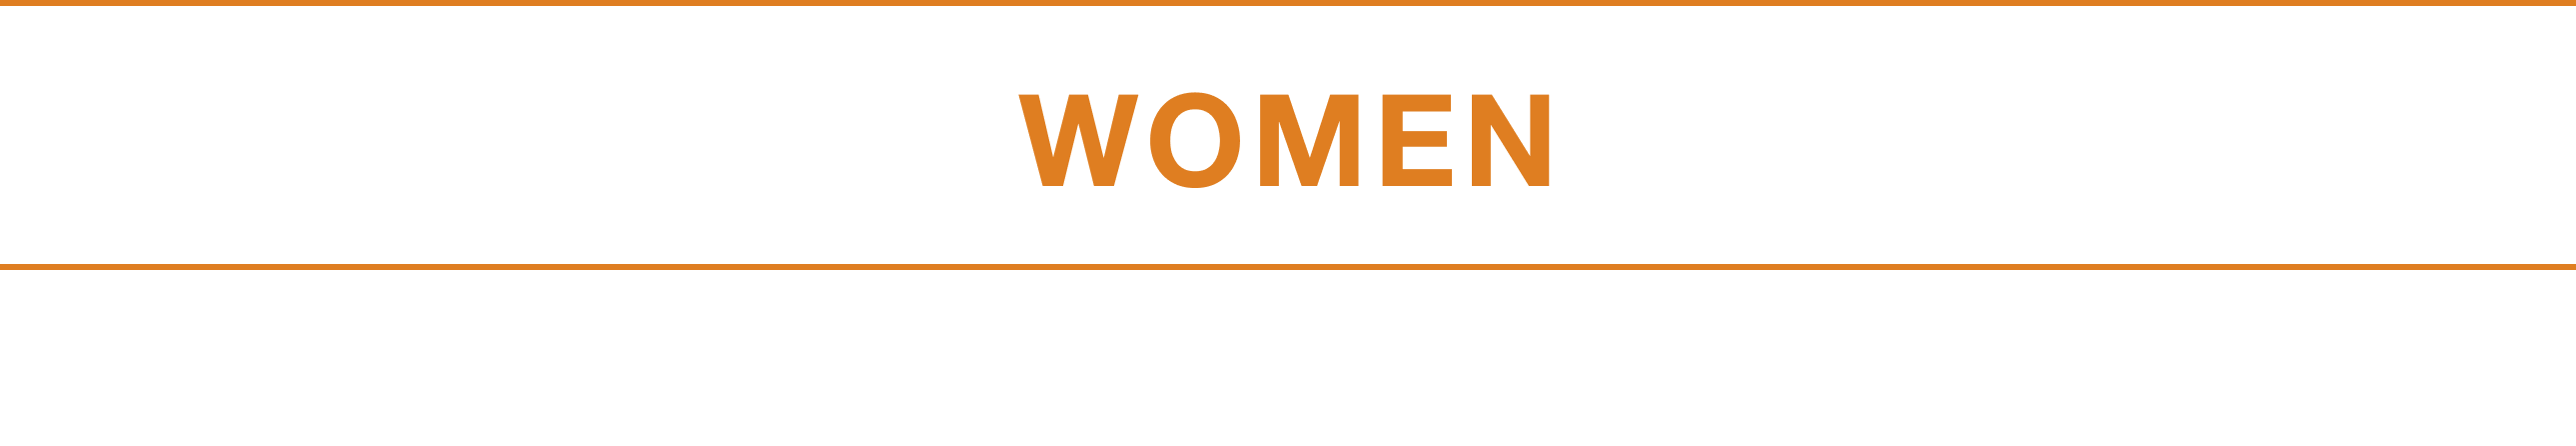 WOMEN_TITLE_1-min